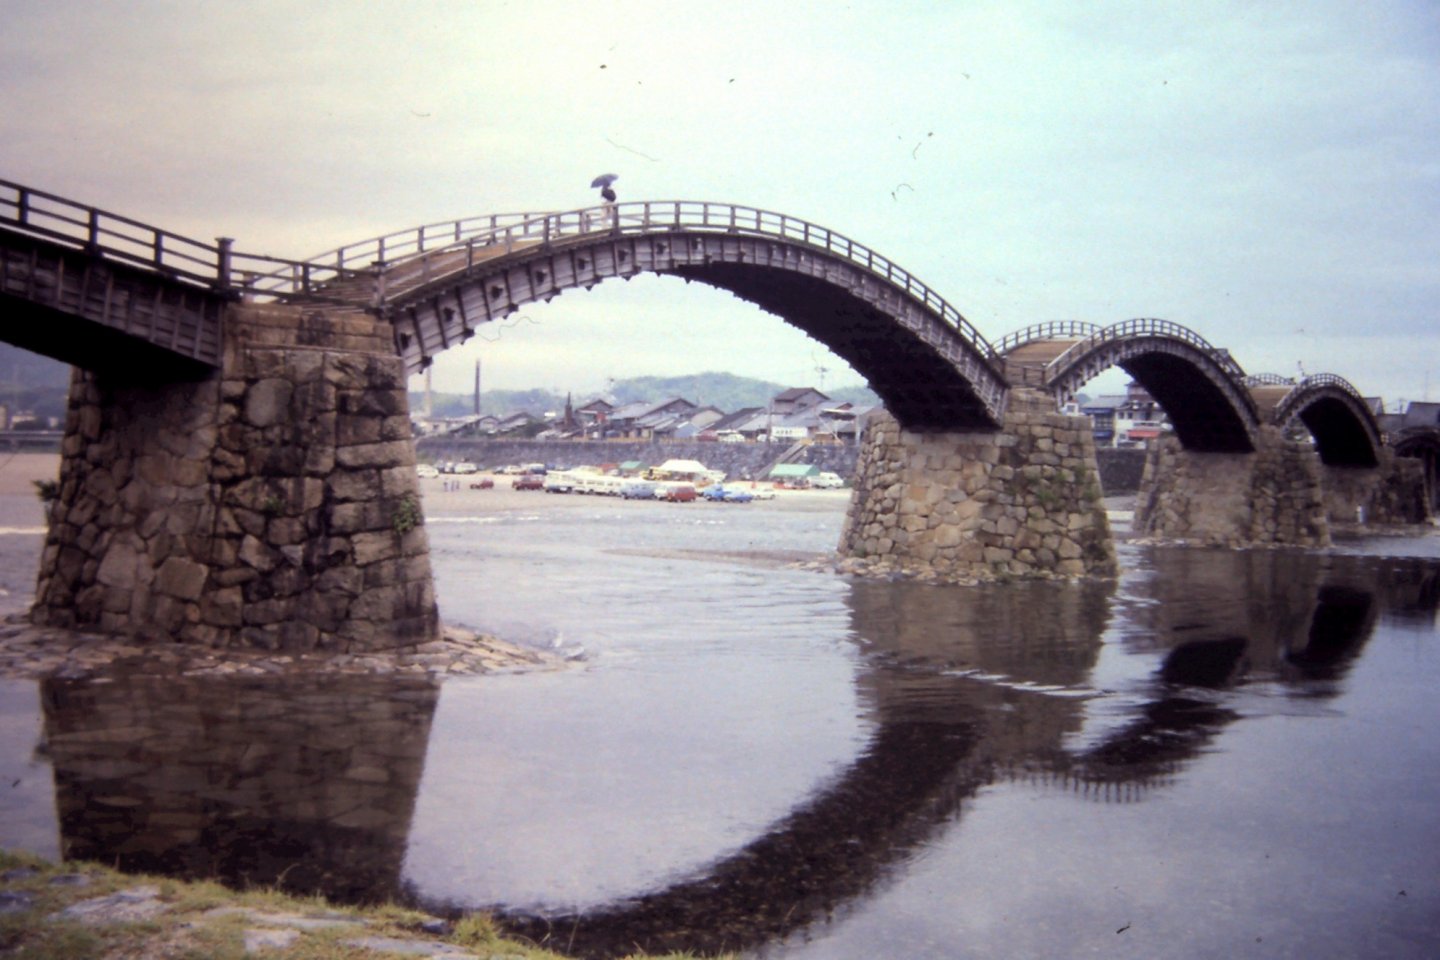 錦帶橋是一座由五座拱橋組合而成的大橋。